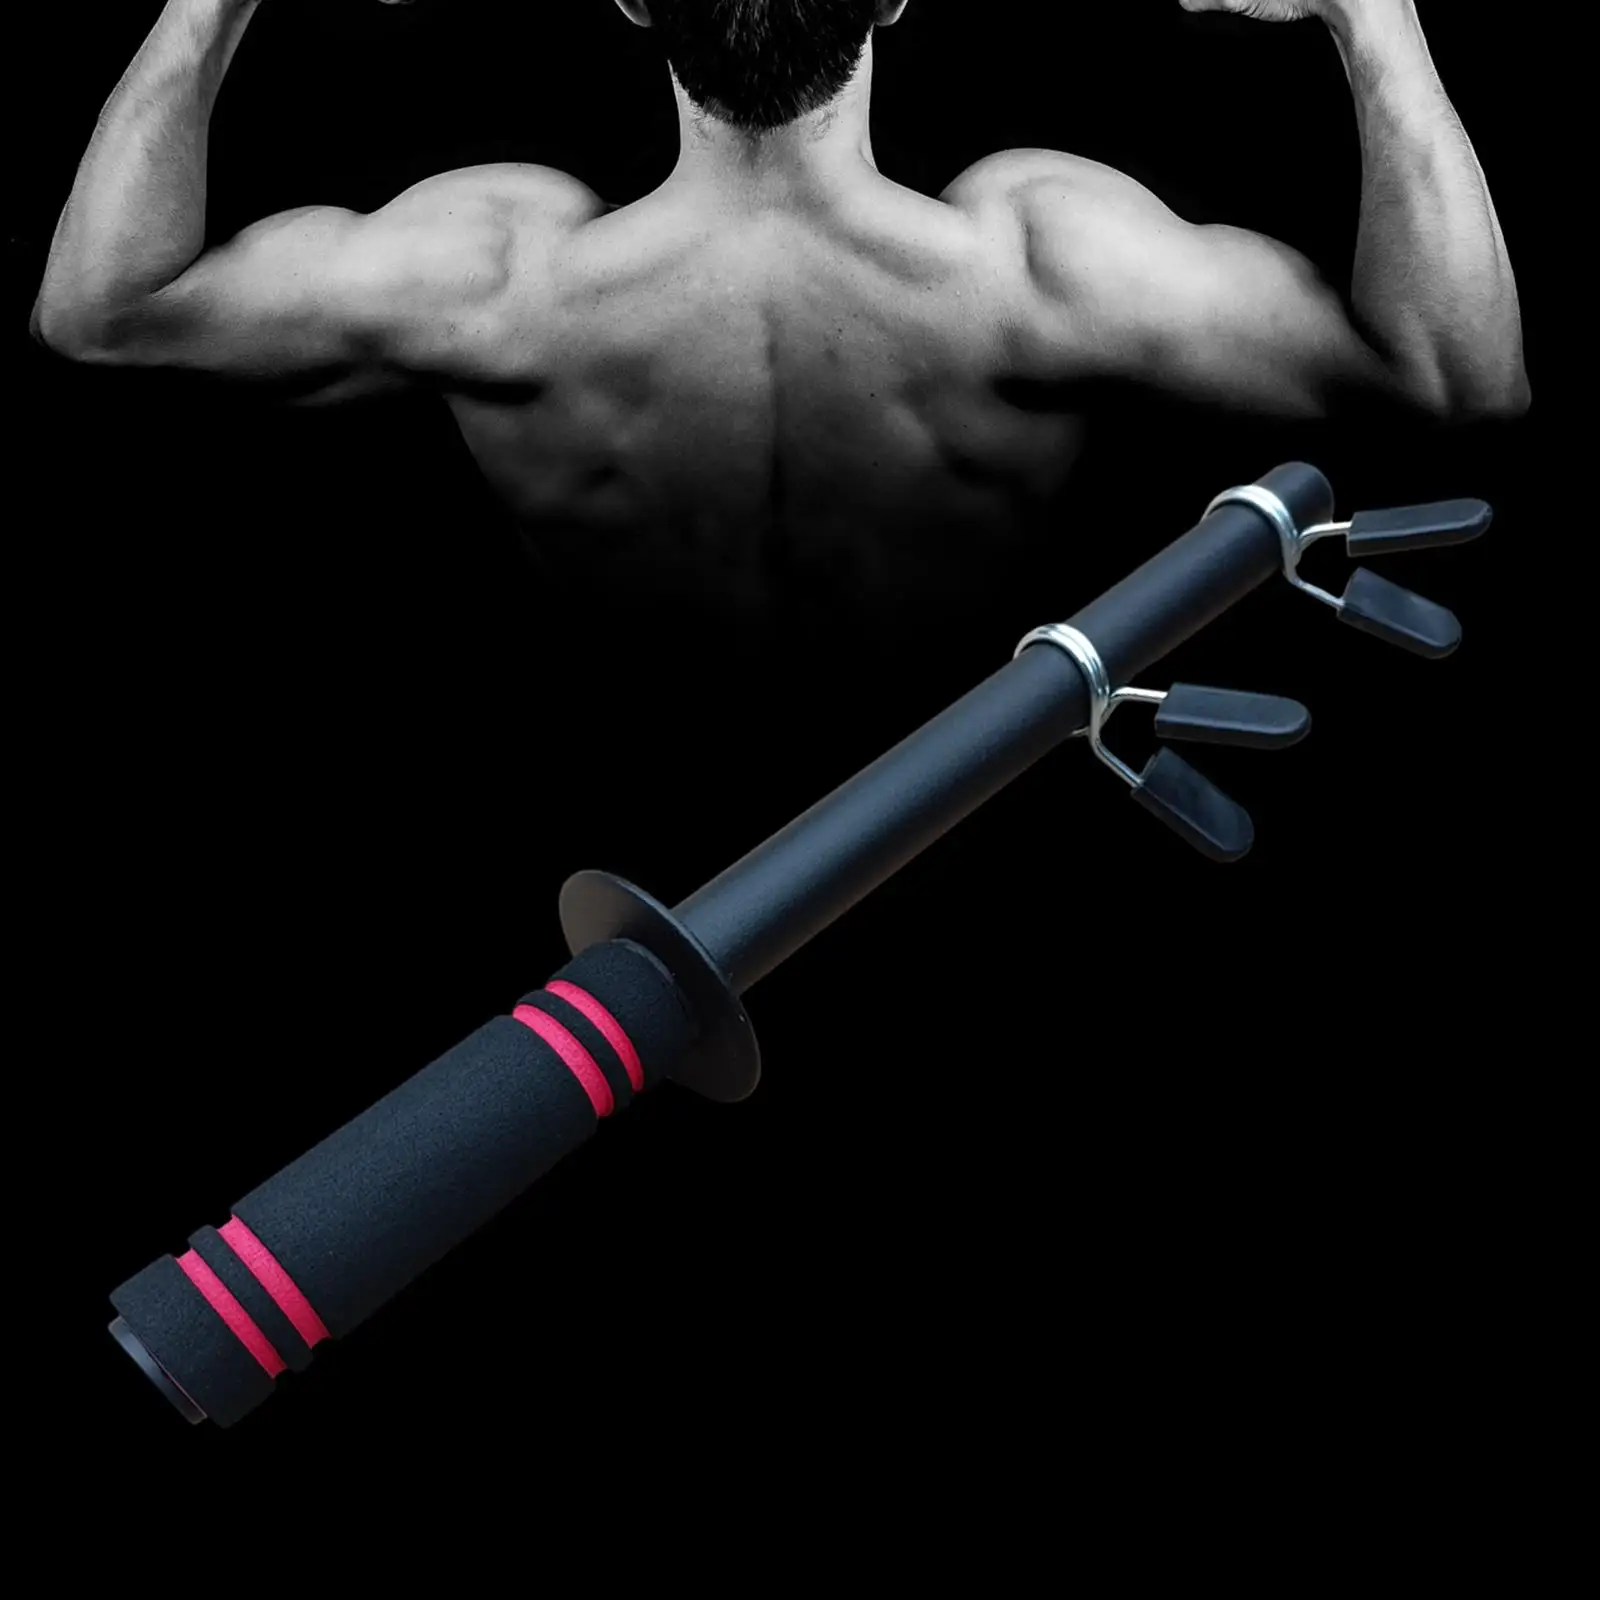 Dumbbell Hand Grip Home Gym Wrist Fitness Equipment Forearm Wrist Exerciser